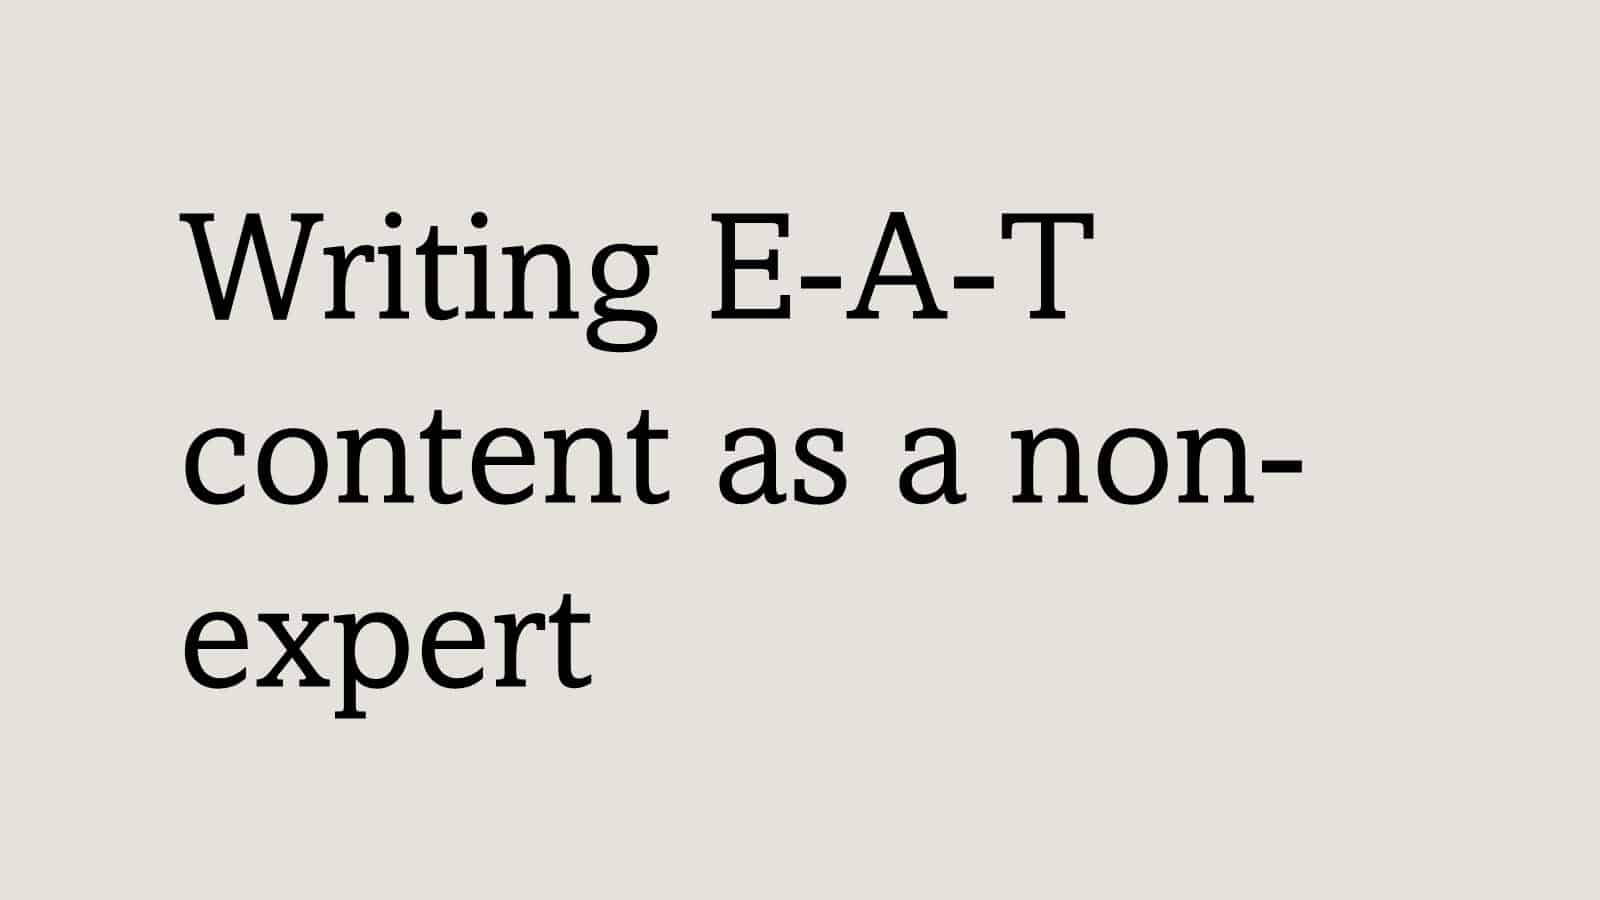 Writing E-A-T content as a non-expert